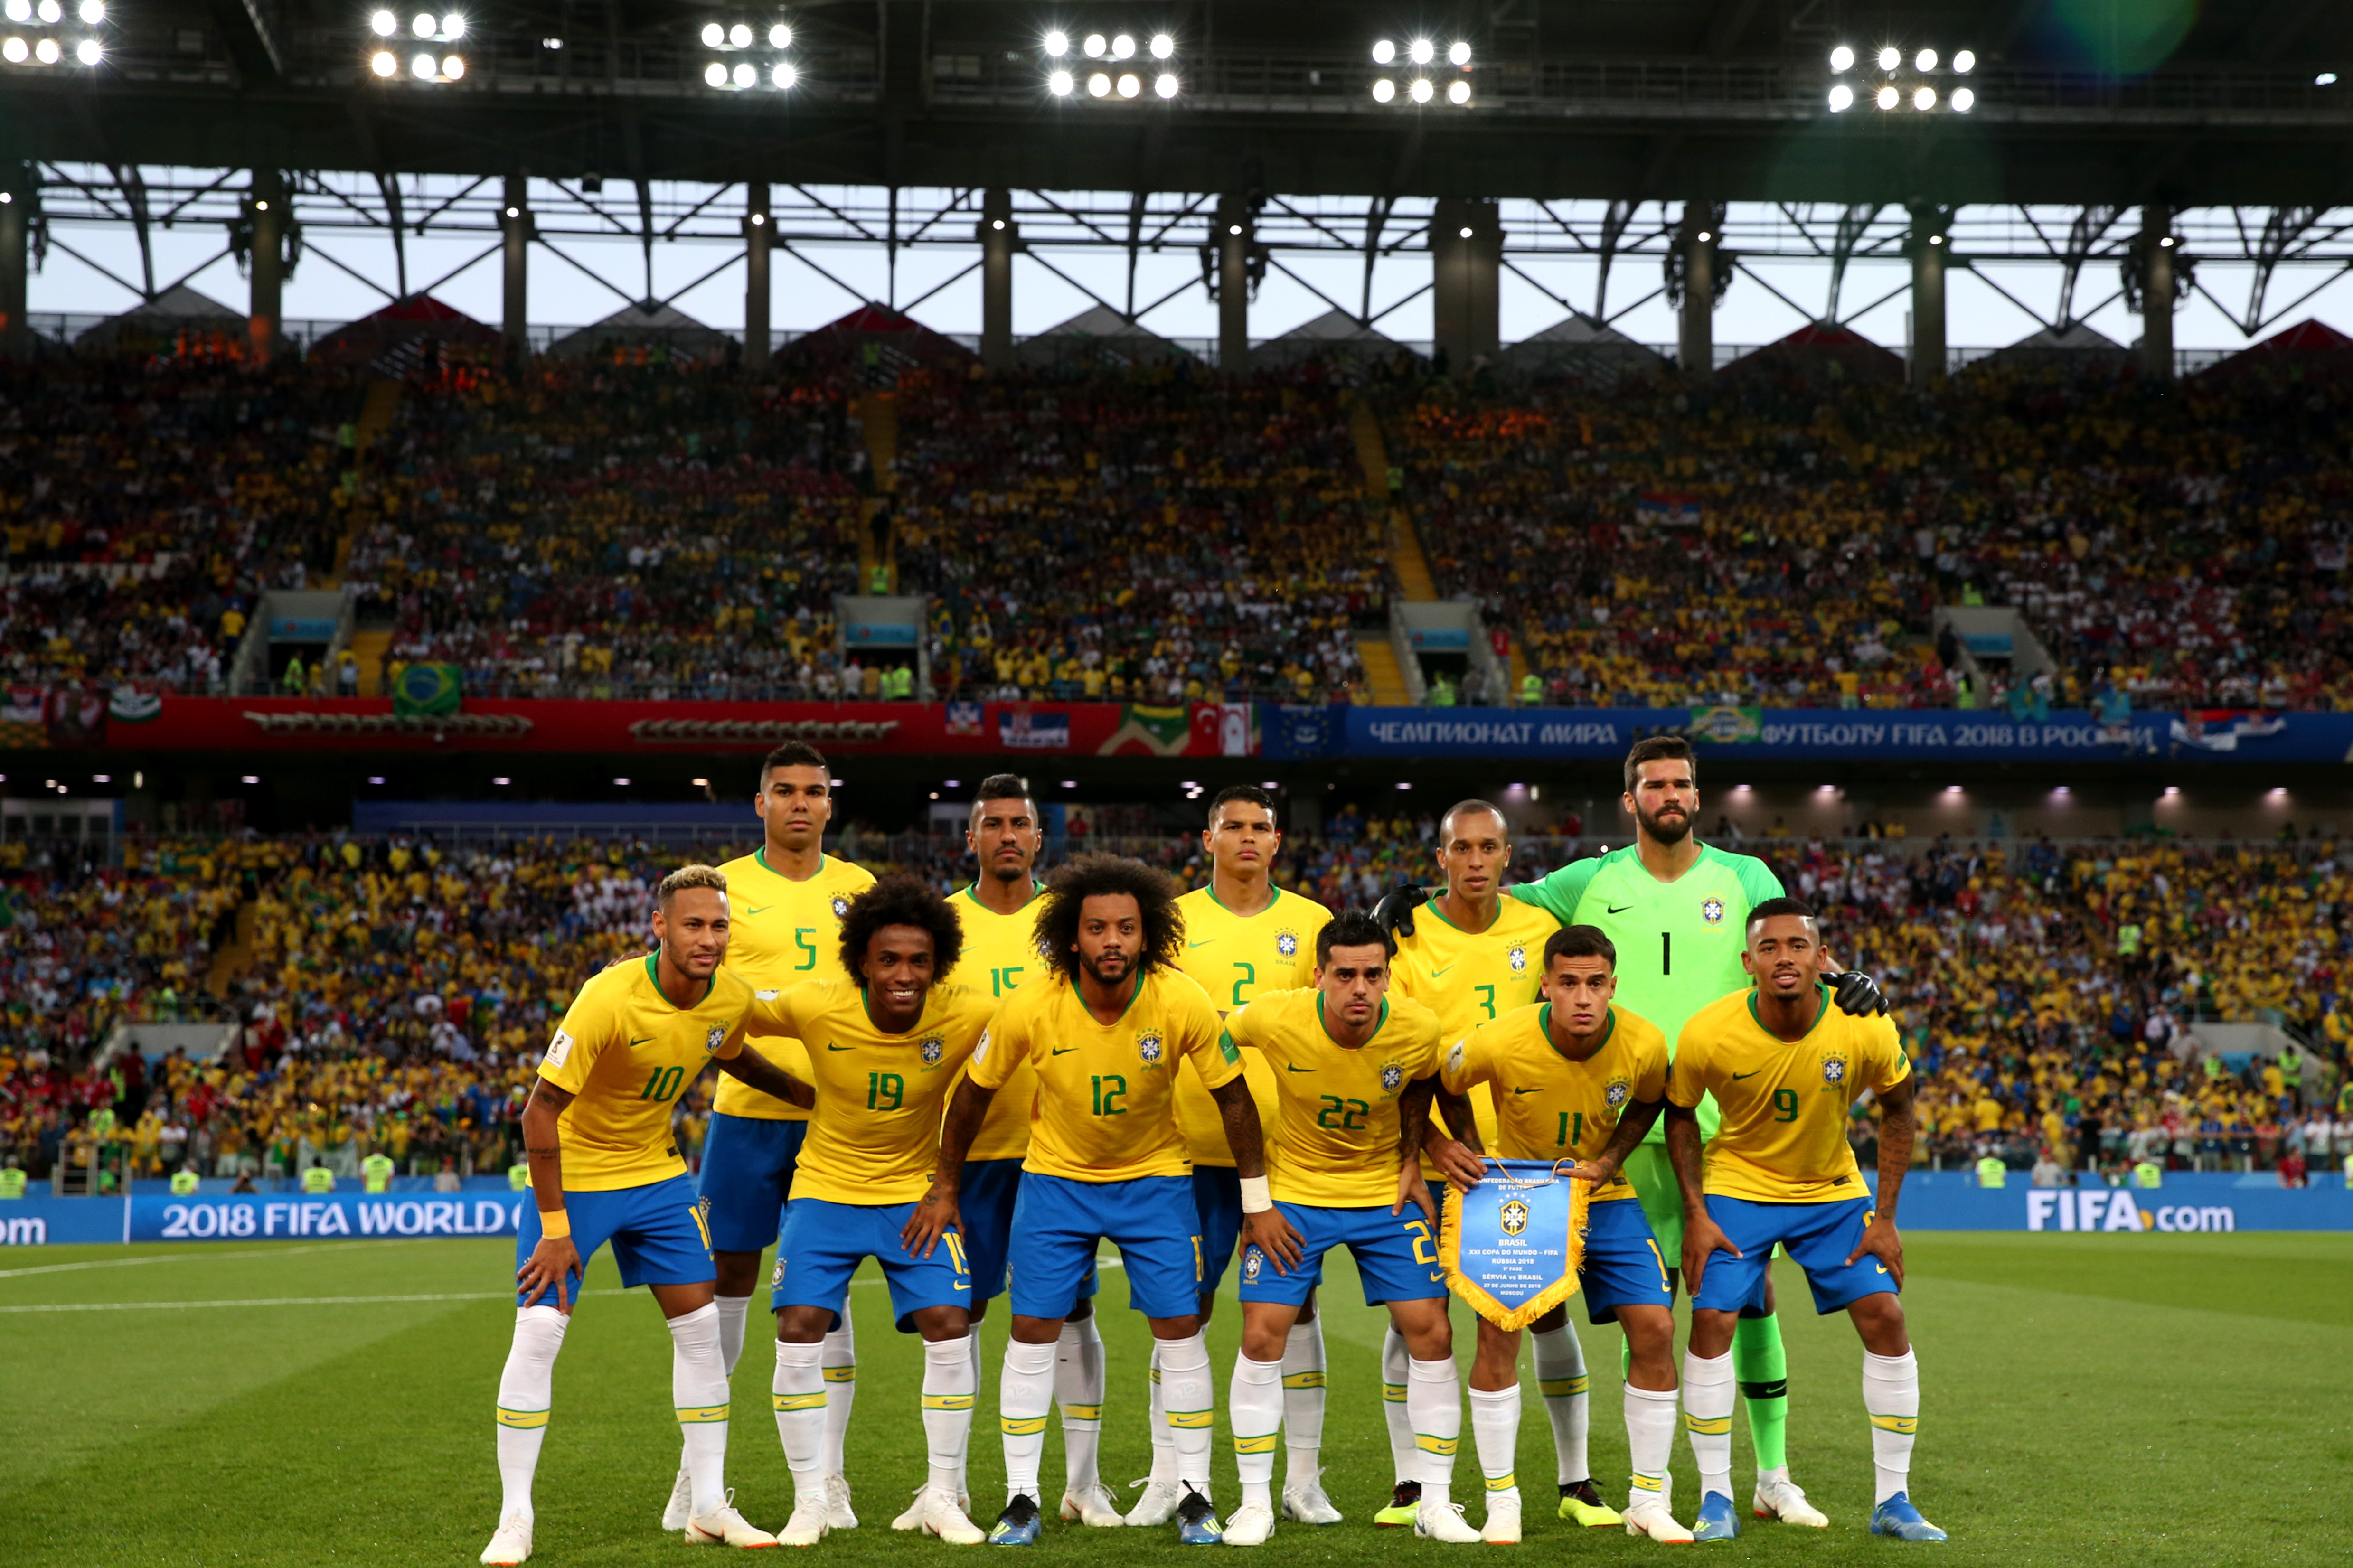 Fifa divulga os horários dos jogos da Seleção Brasileira na Copa